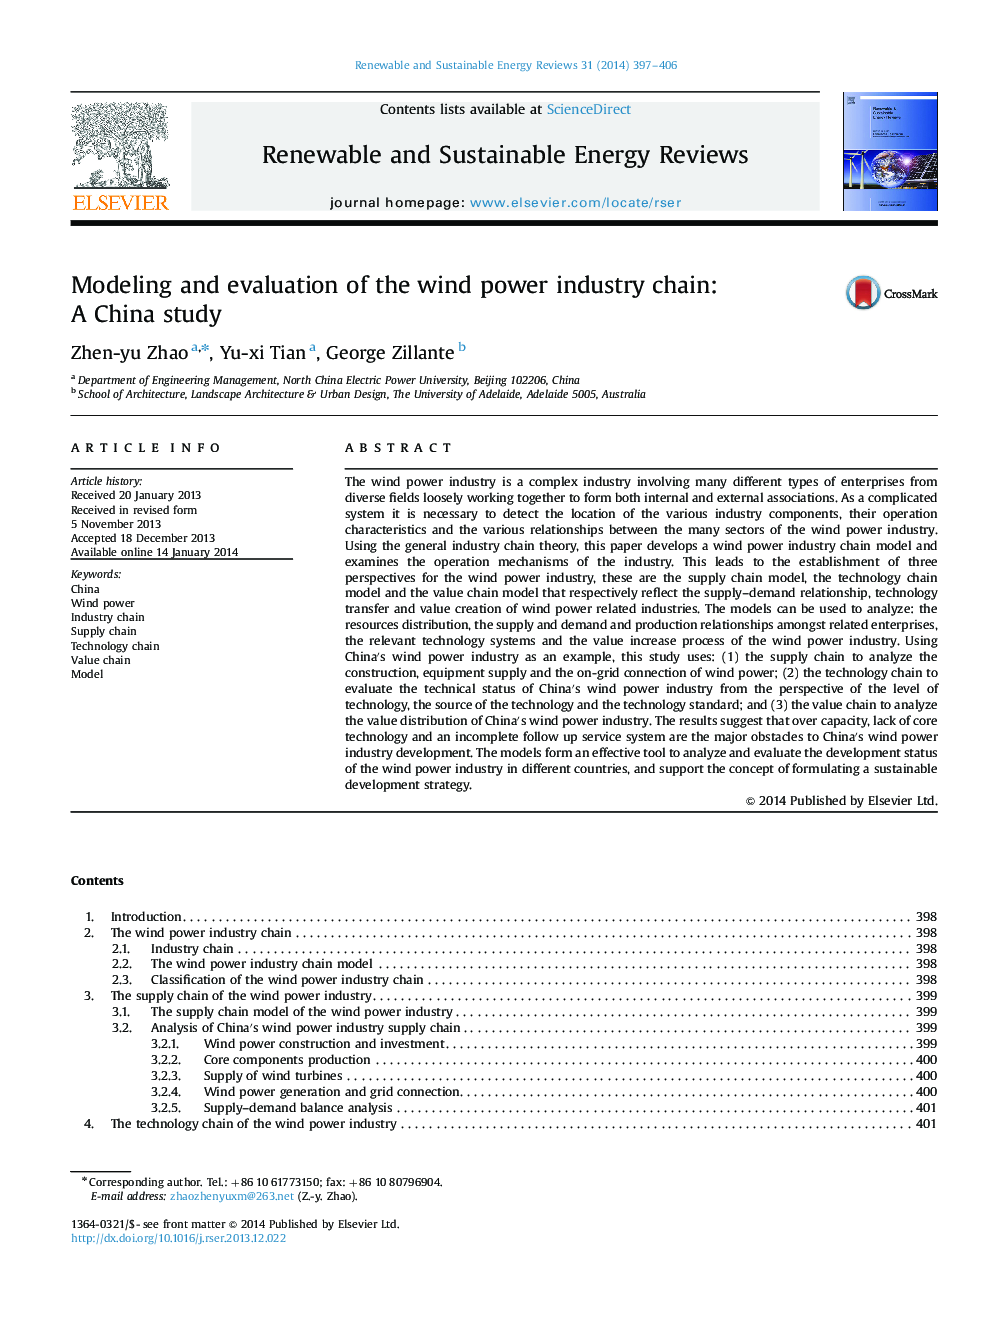 مدلسازی و ارزیابی زنجیره صنعت انرژی باد: مطالعه چین 